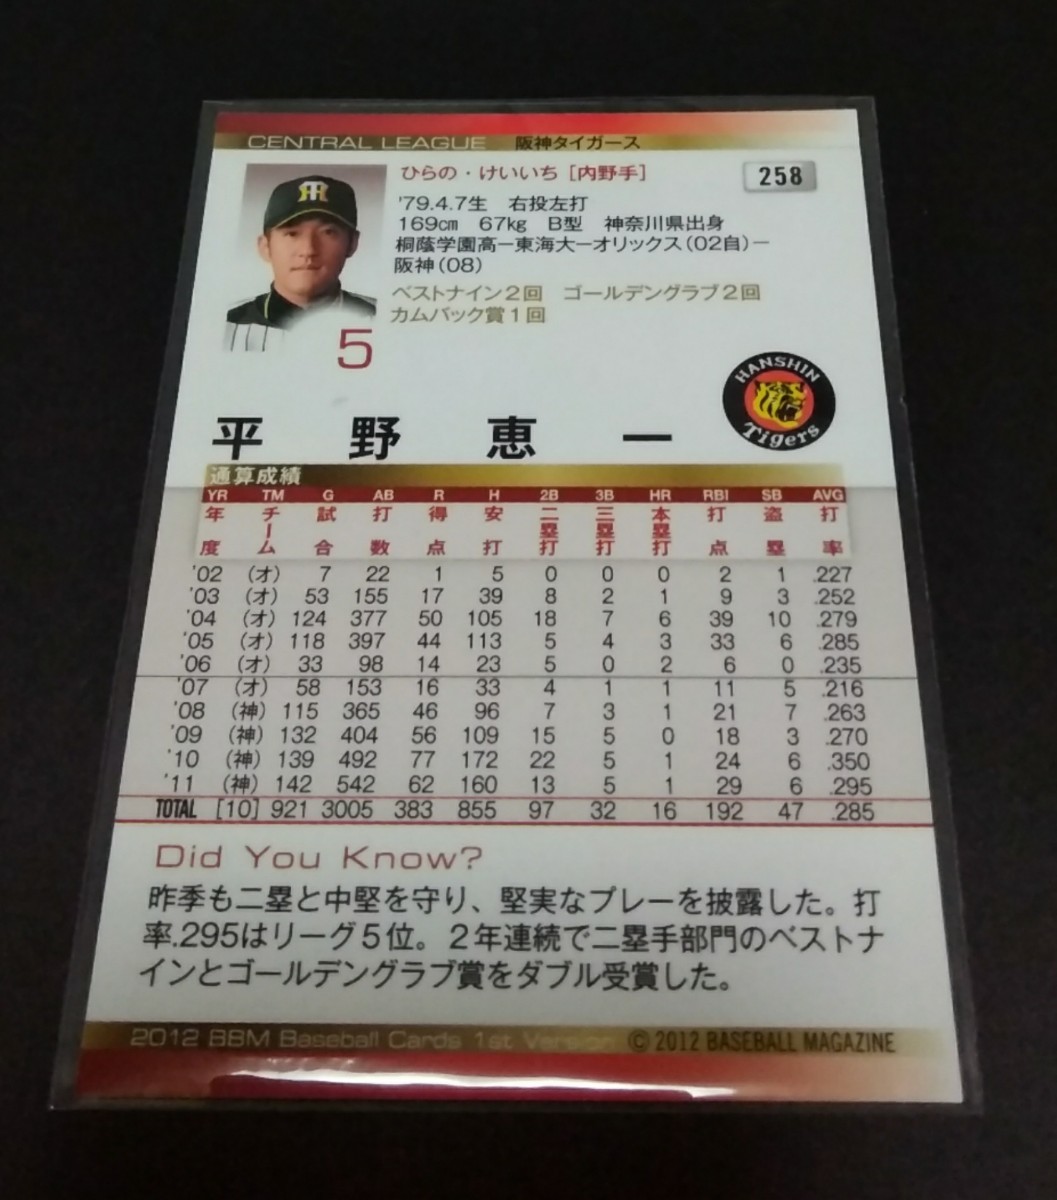 2012年BBM 1st 平野恵一 阪神 銀箔サイン入り No 258 の入札履歴